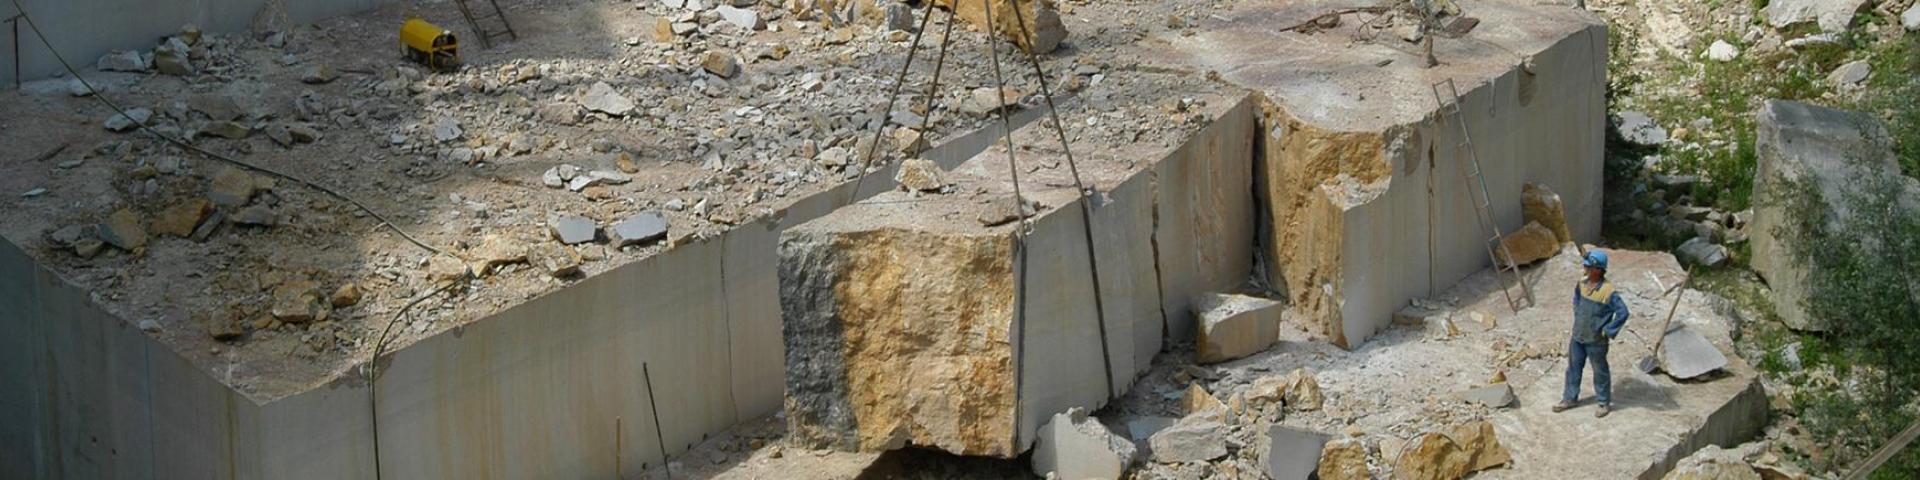 Extraction de blocs de marbre dans les carrières du Boulonnais (Ferques, Pas-de-Calais)